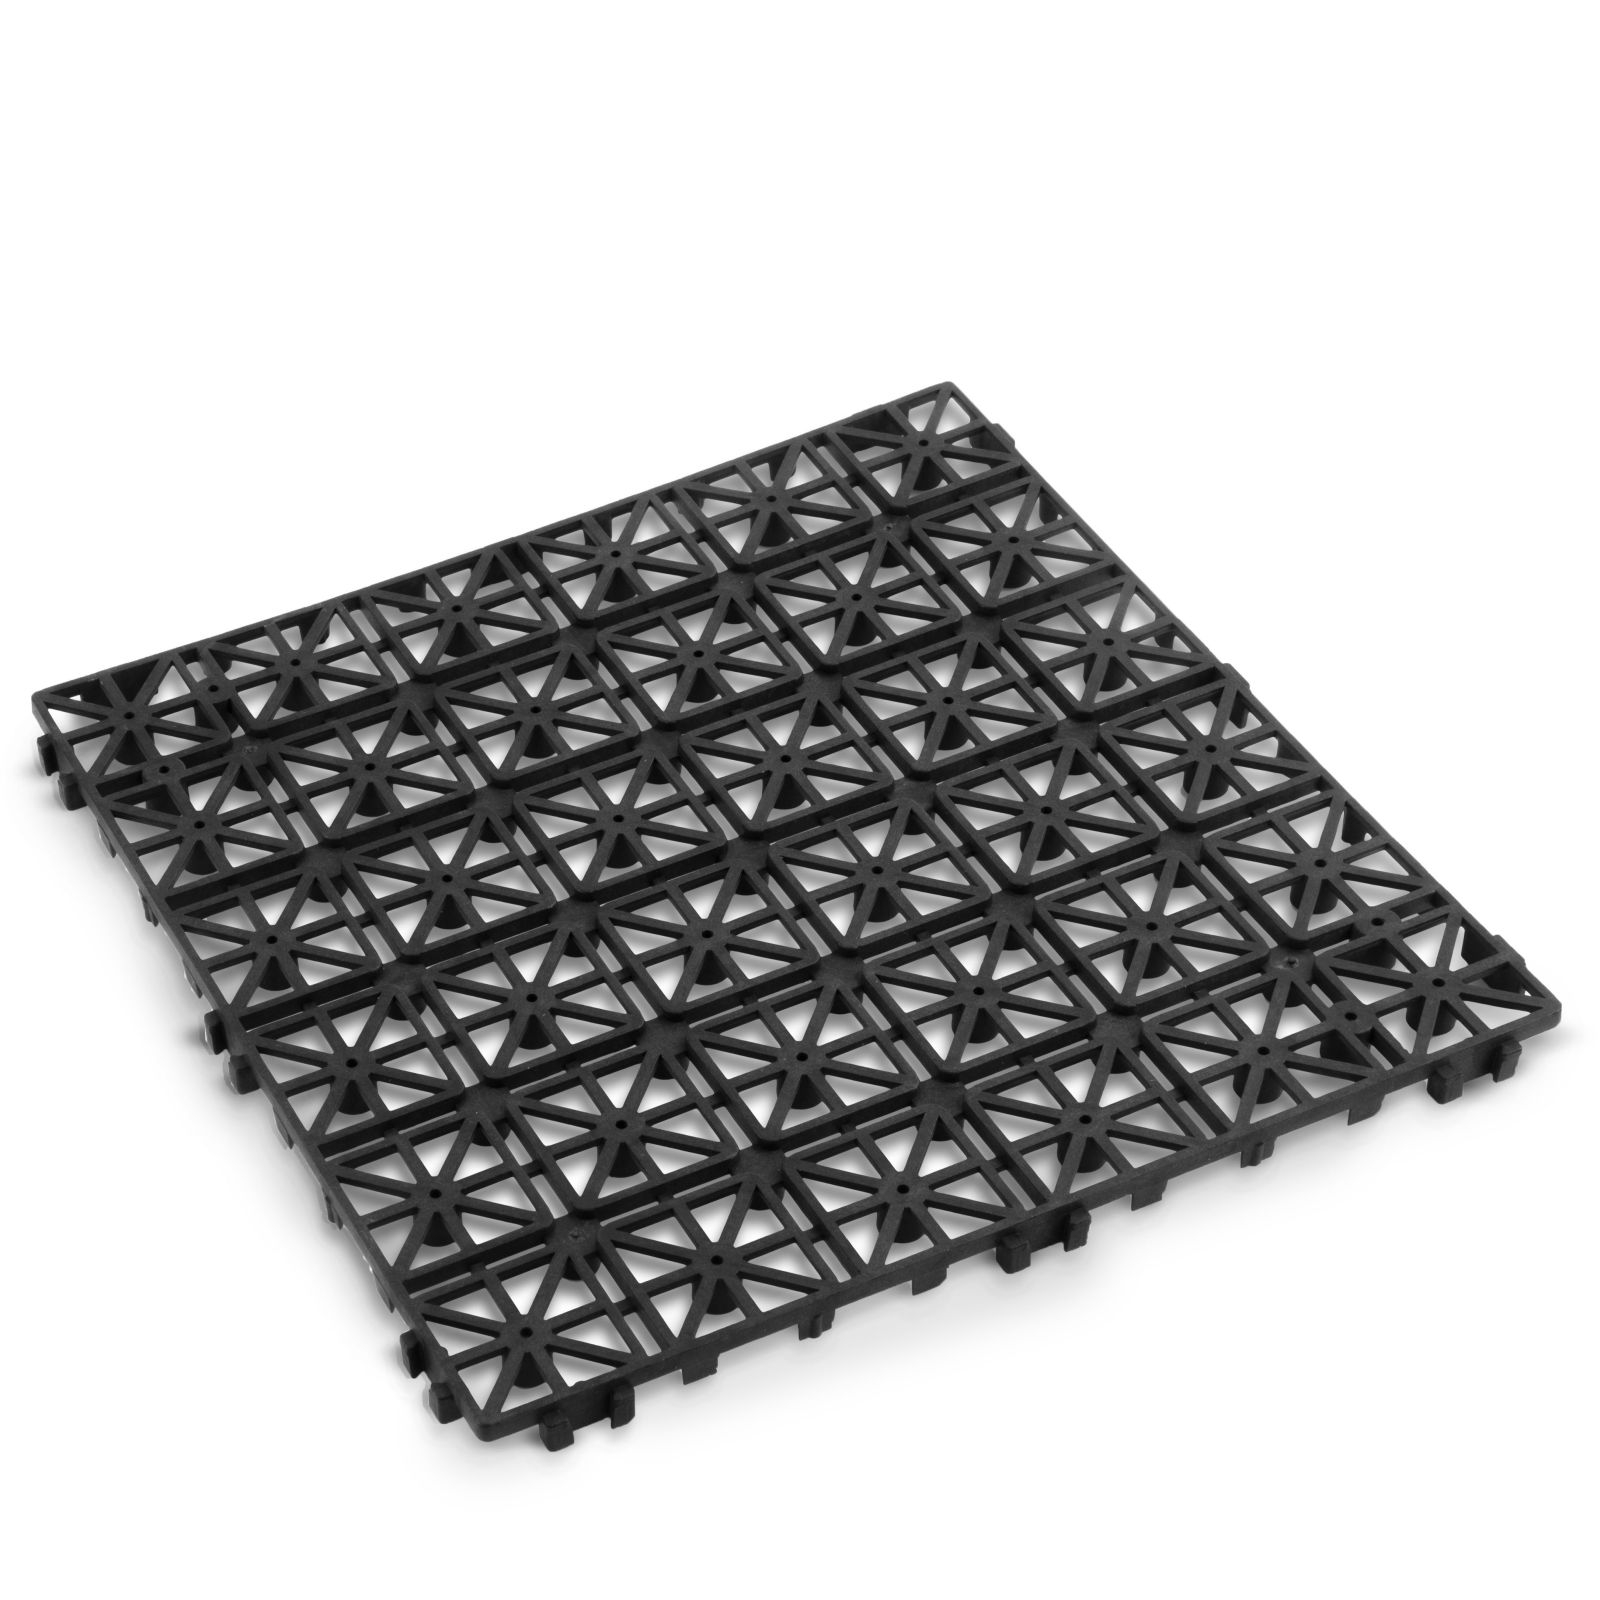 Paviment pentru gradina - plastic - negru - 29 x 29 x 1,5 cm - 4 buc pachet